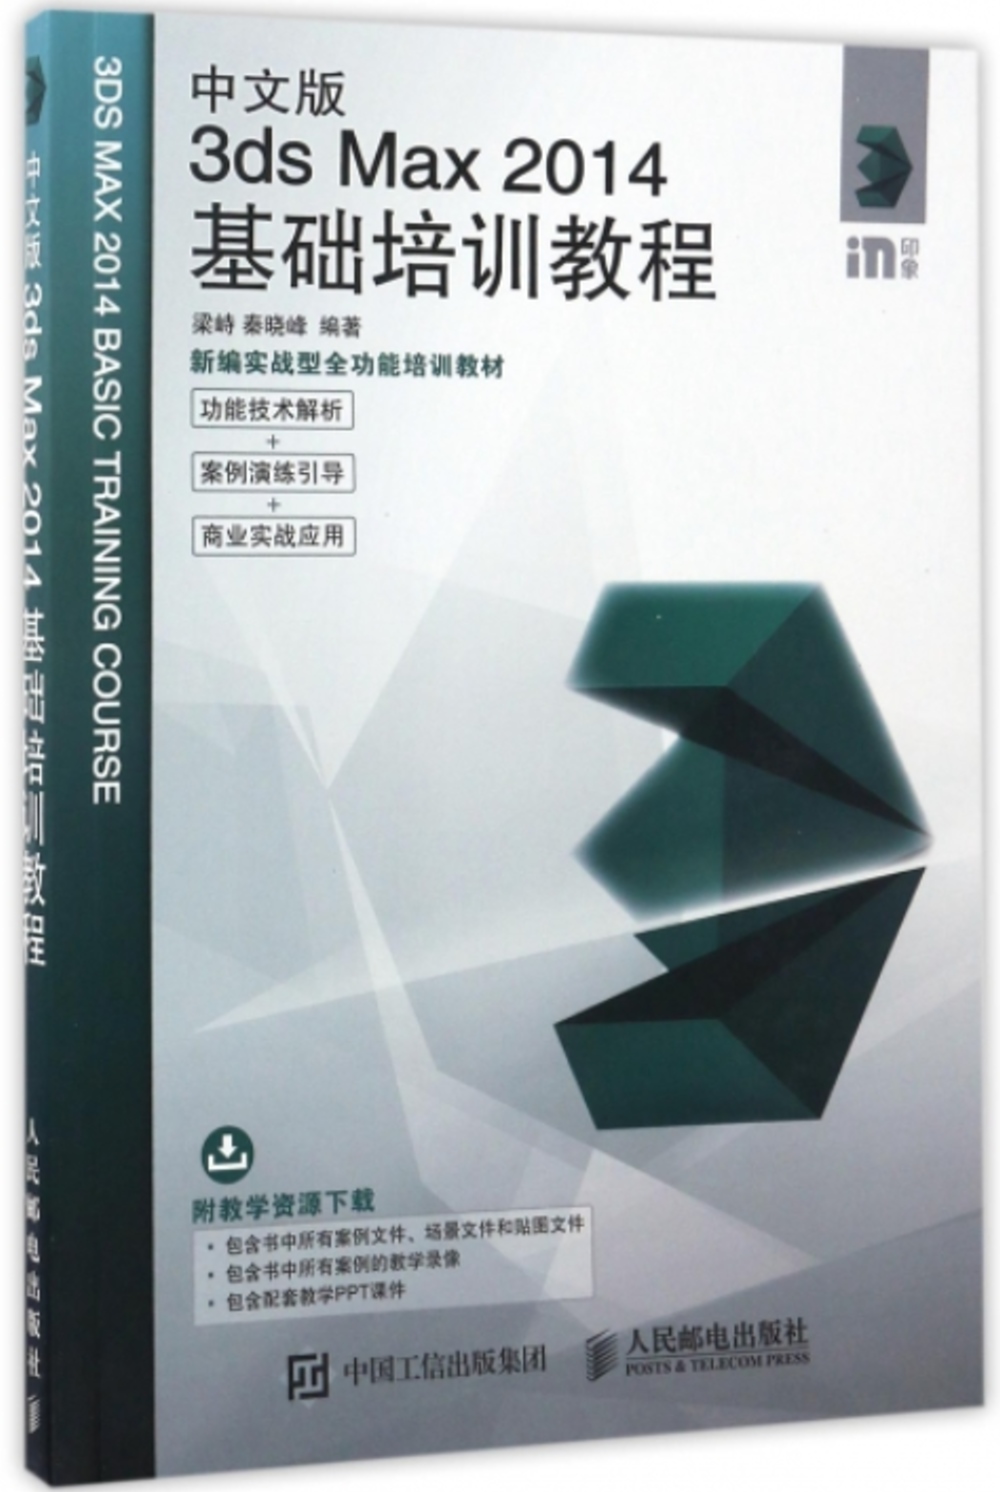 中文版3ds Max 2014基礎培訓教程